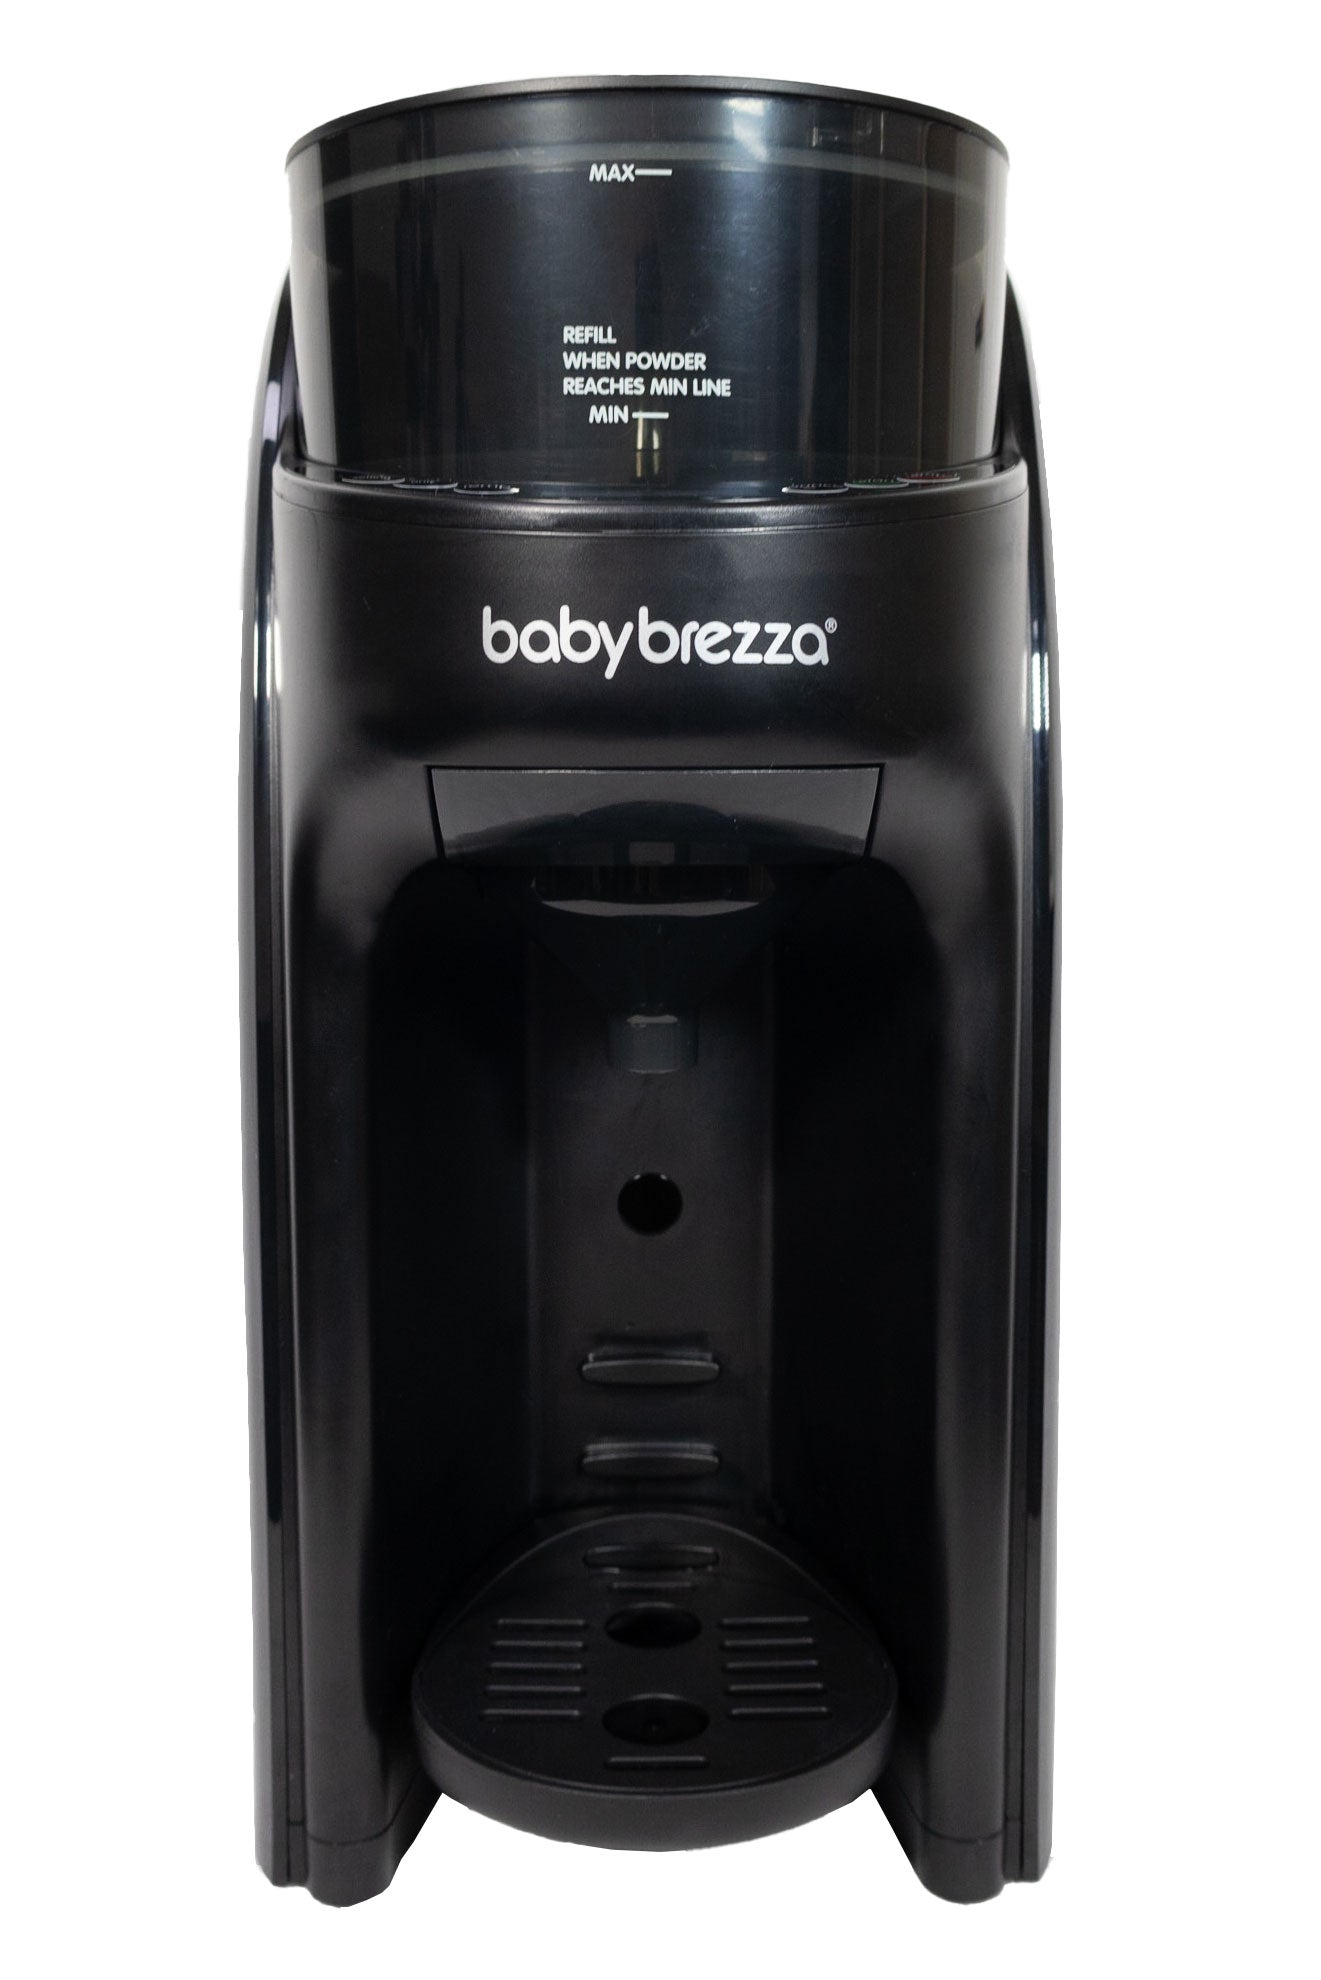 Baby Brezza Formula Pro Advanced Baby Formula Dispenser WiFi